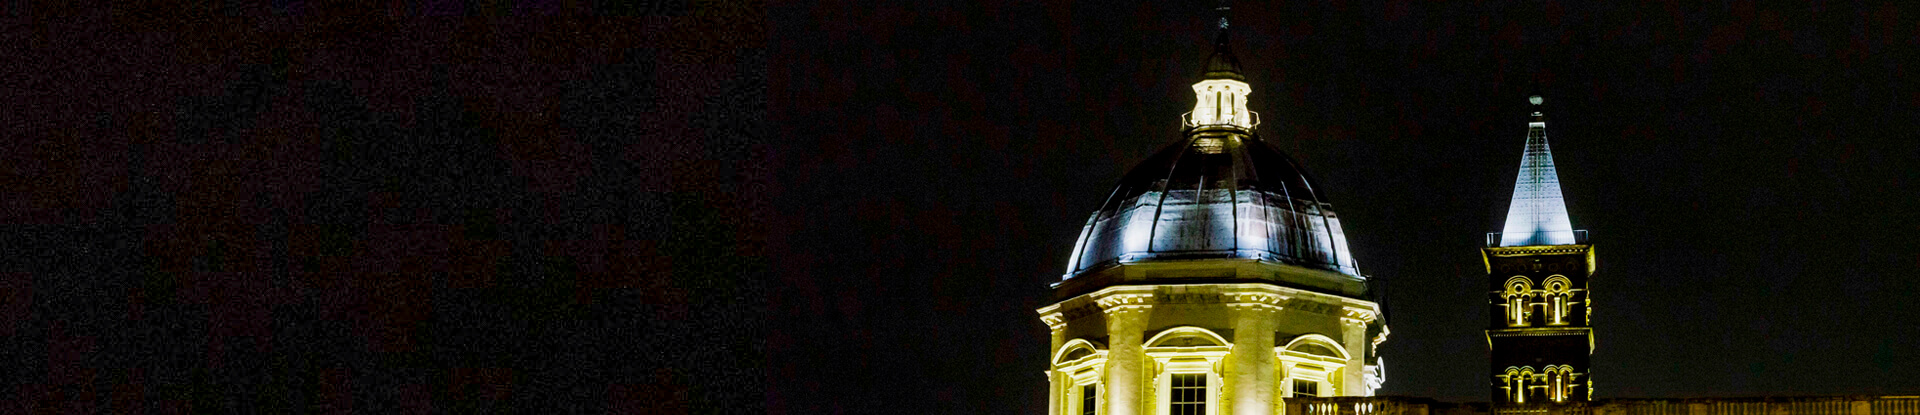 Acea, l'illuminazione della Basilica di Santa Maria Maggiore